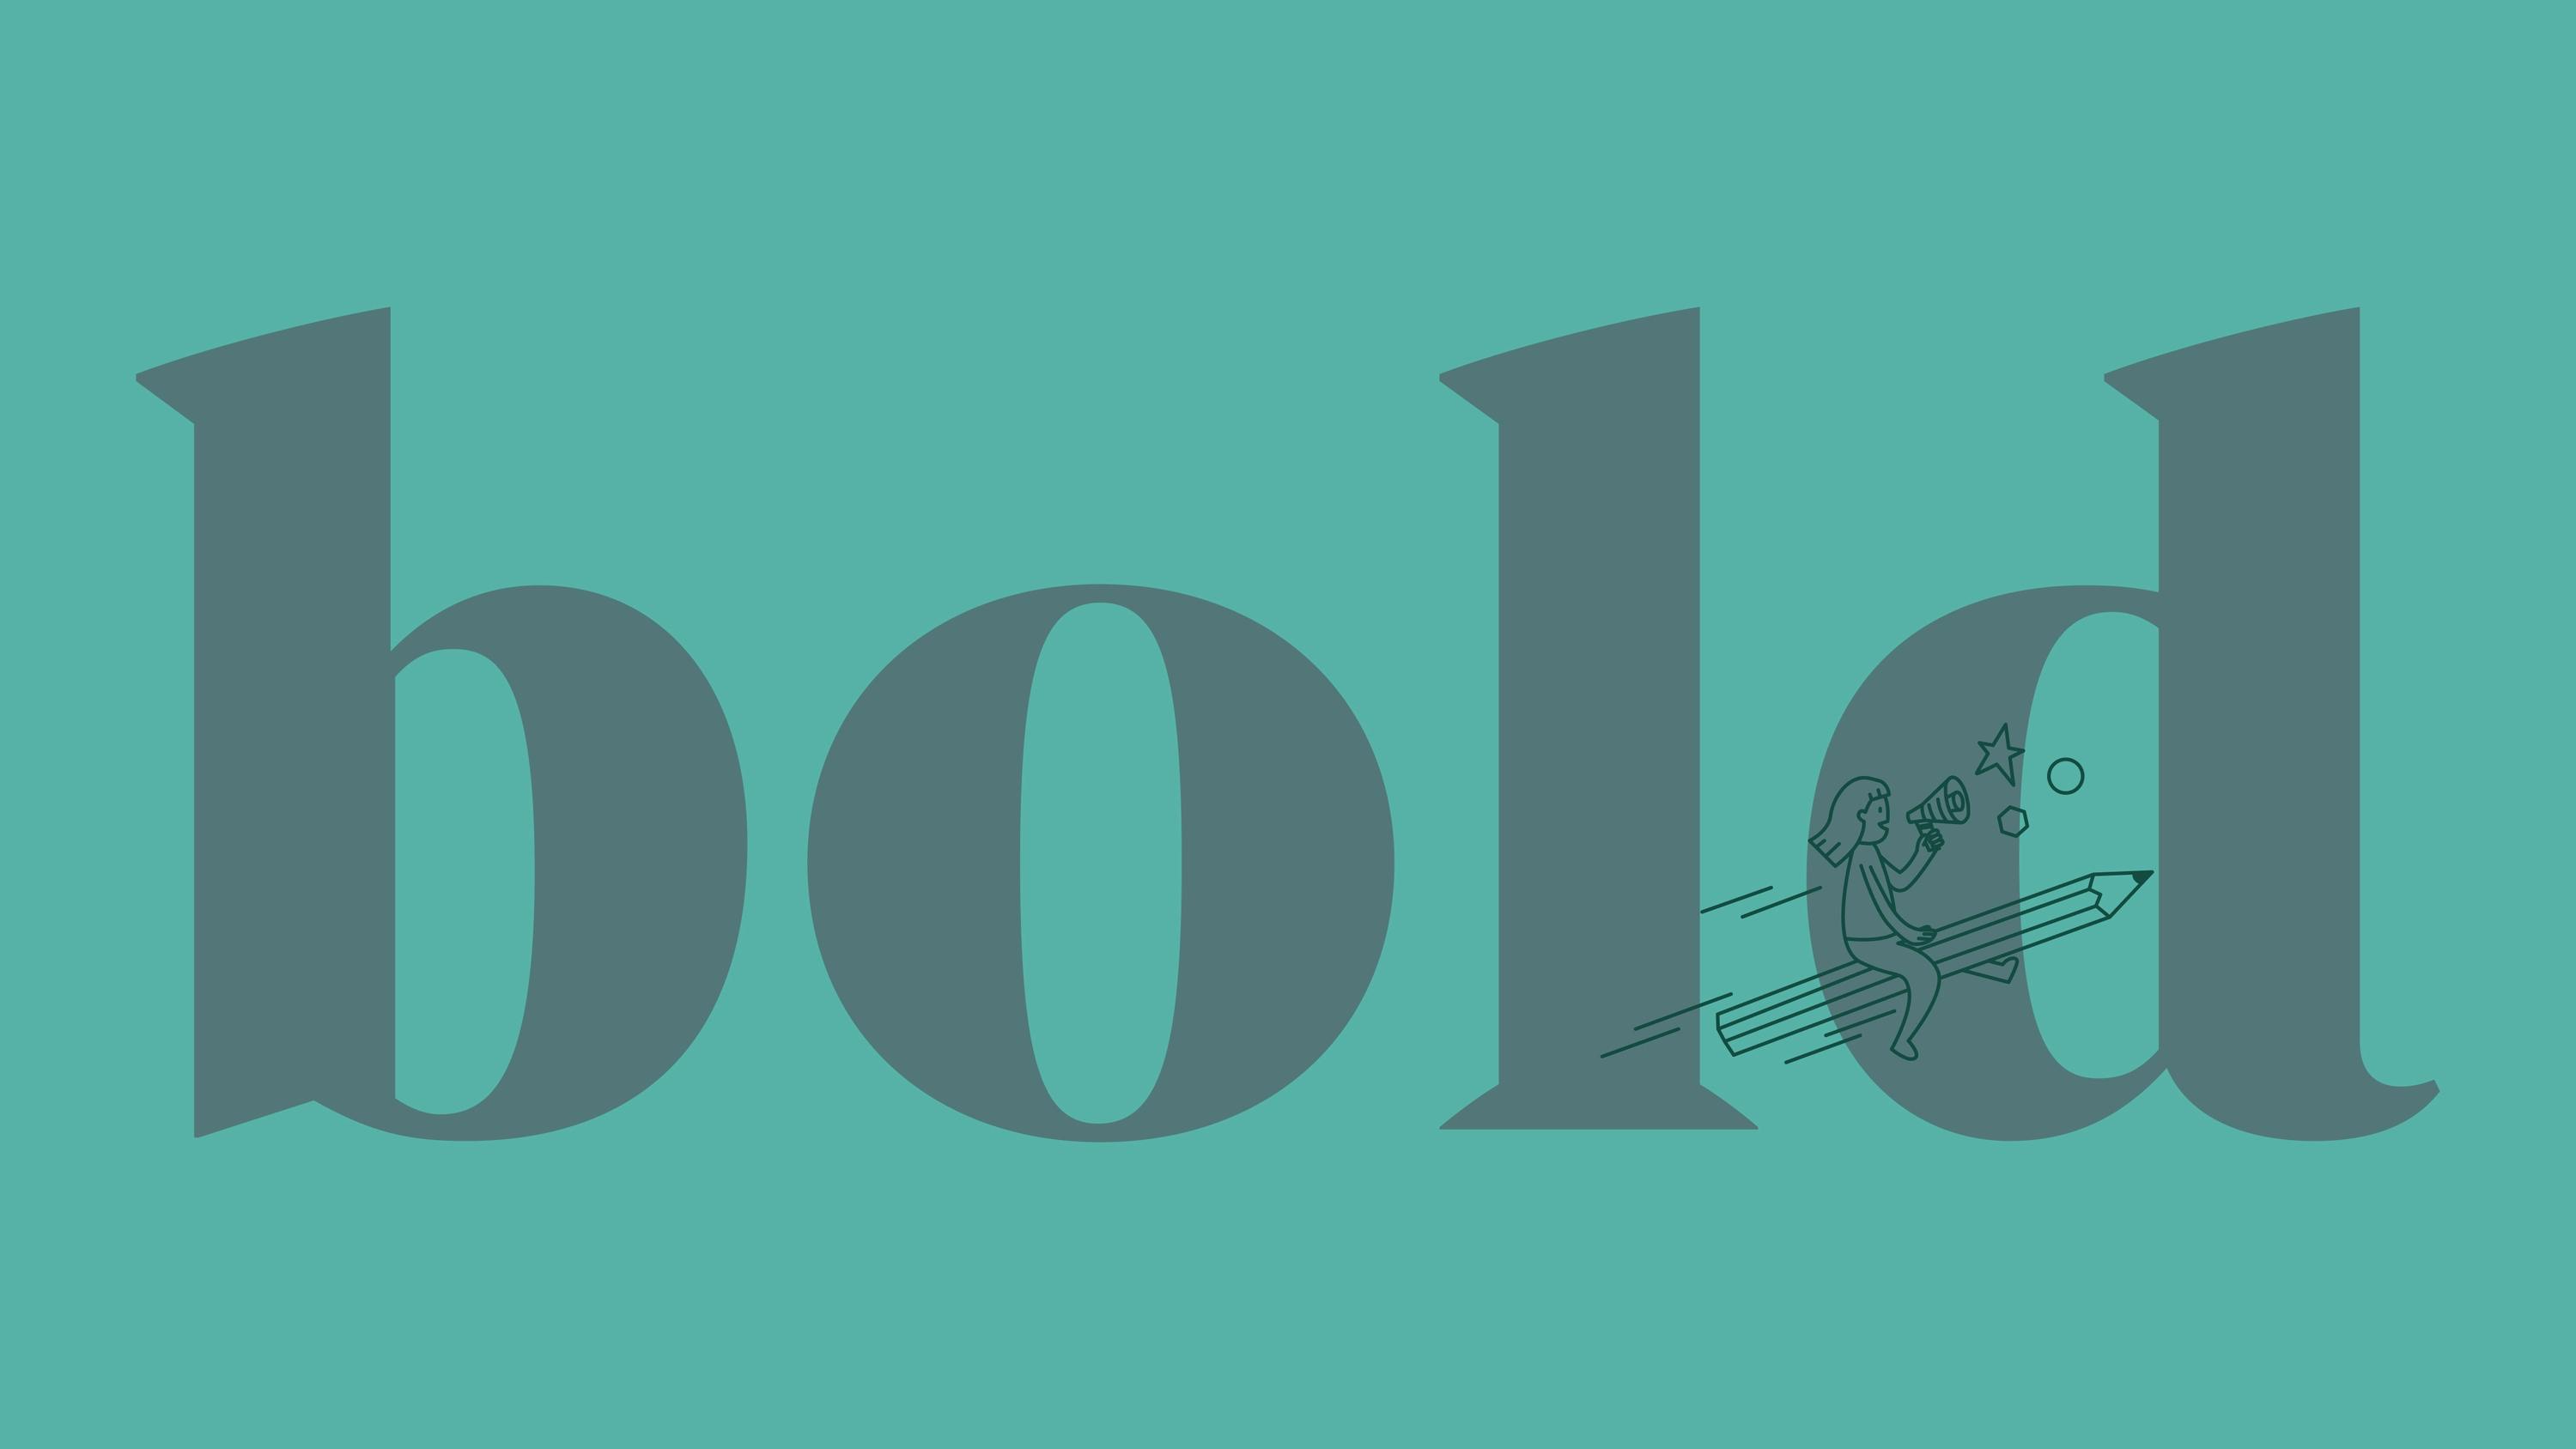 Farbfläche mit Wort "bold", Lineare Illustration: Mädchen mit Megafon fliegt auf Bleistift durch die Lüfte © good matters